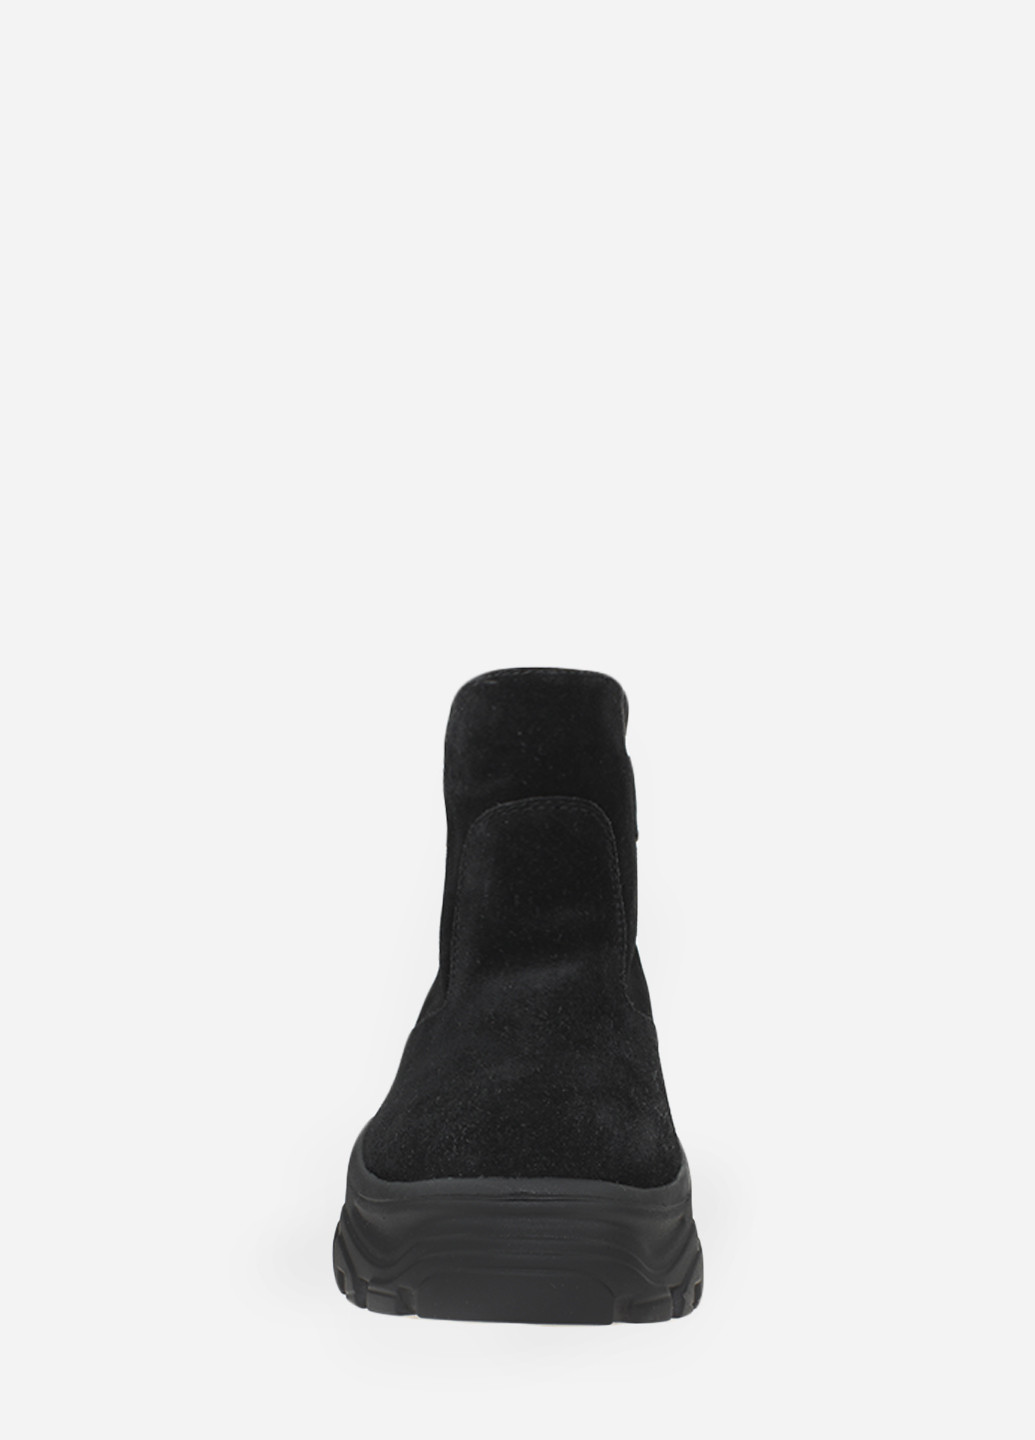 Зимние ботинки rv5673-11 черный Vito Villini из натуральной замши